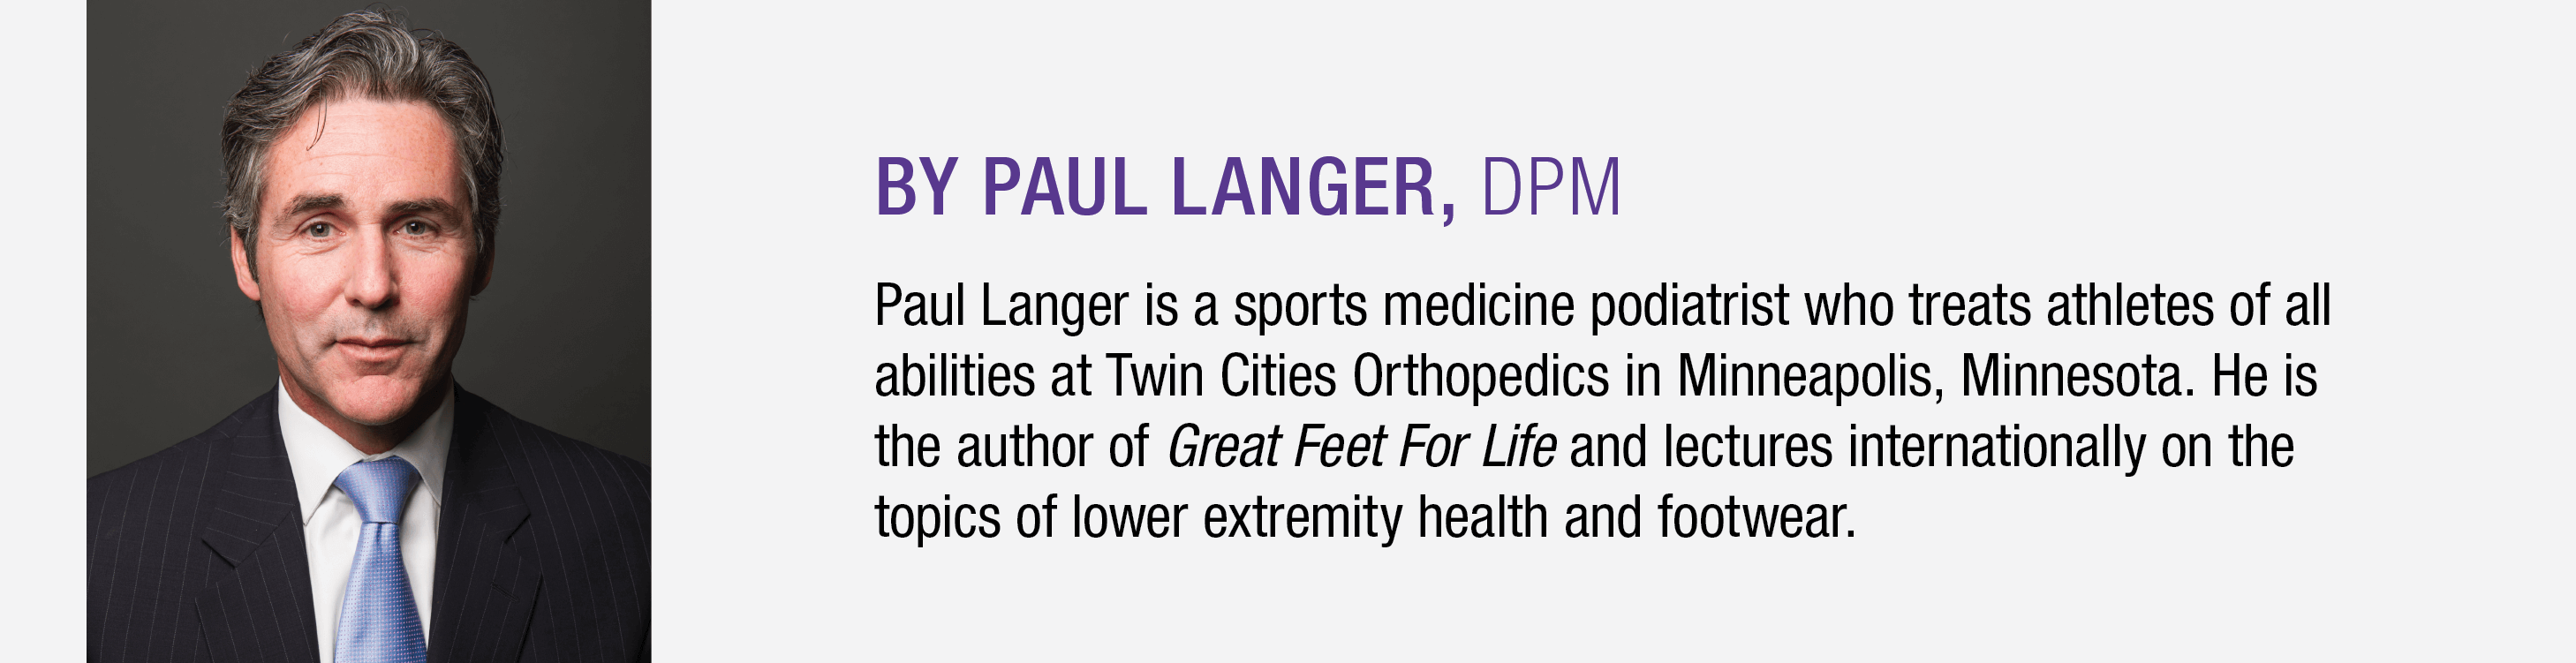 Paul Langer Bio